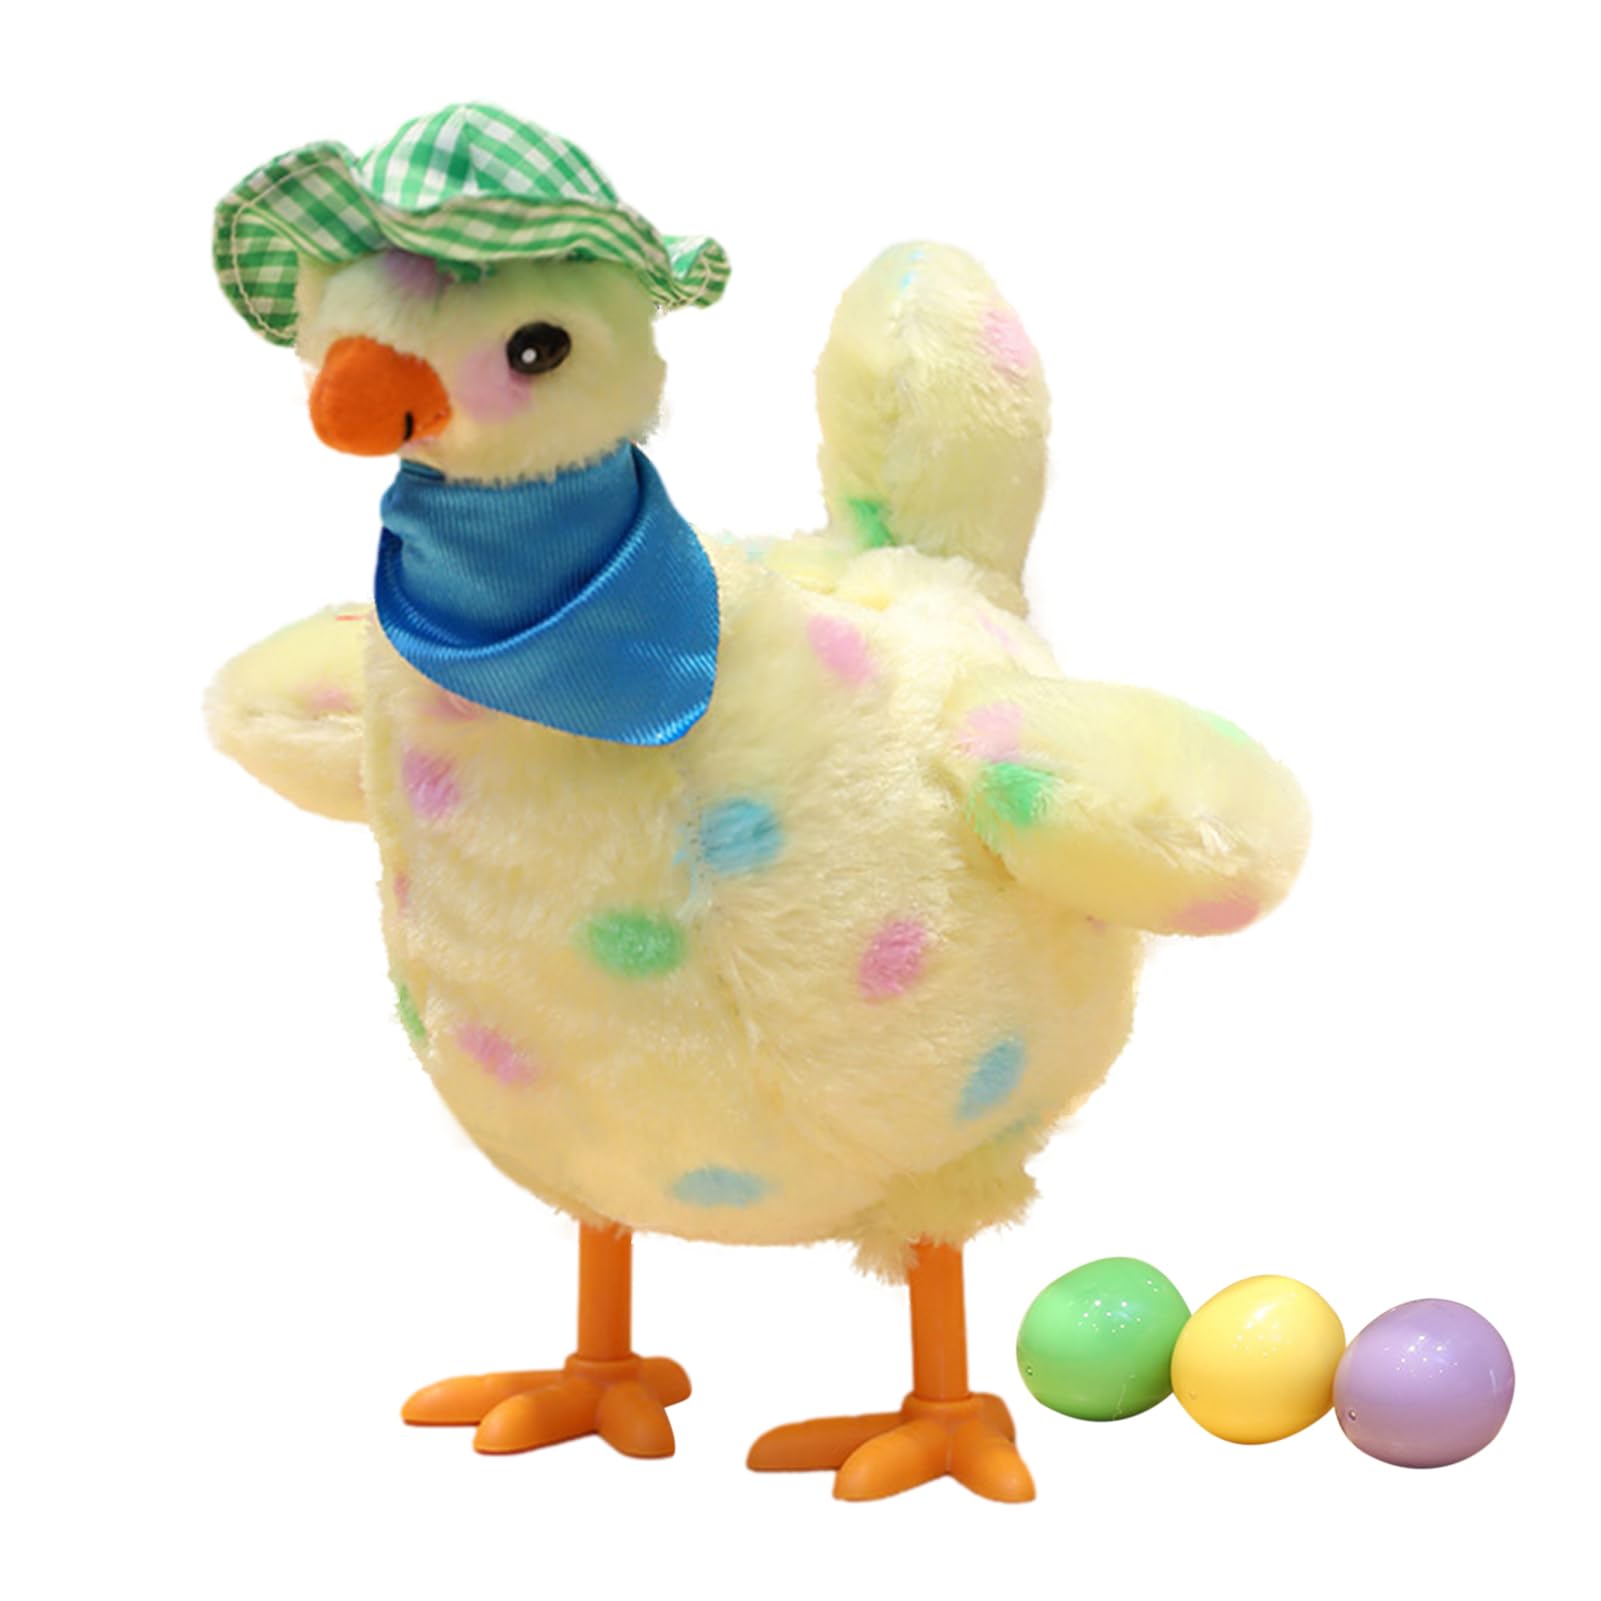 Zceplem Henne legt Eier Spielzeug, Tanzendes Spielzeug, das Eier legt, gefülltes Huhn, Realistische Hühnerfigur mit Hut und Schal für Familientreffen, Feiertagsfeiern, Interaktion